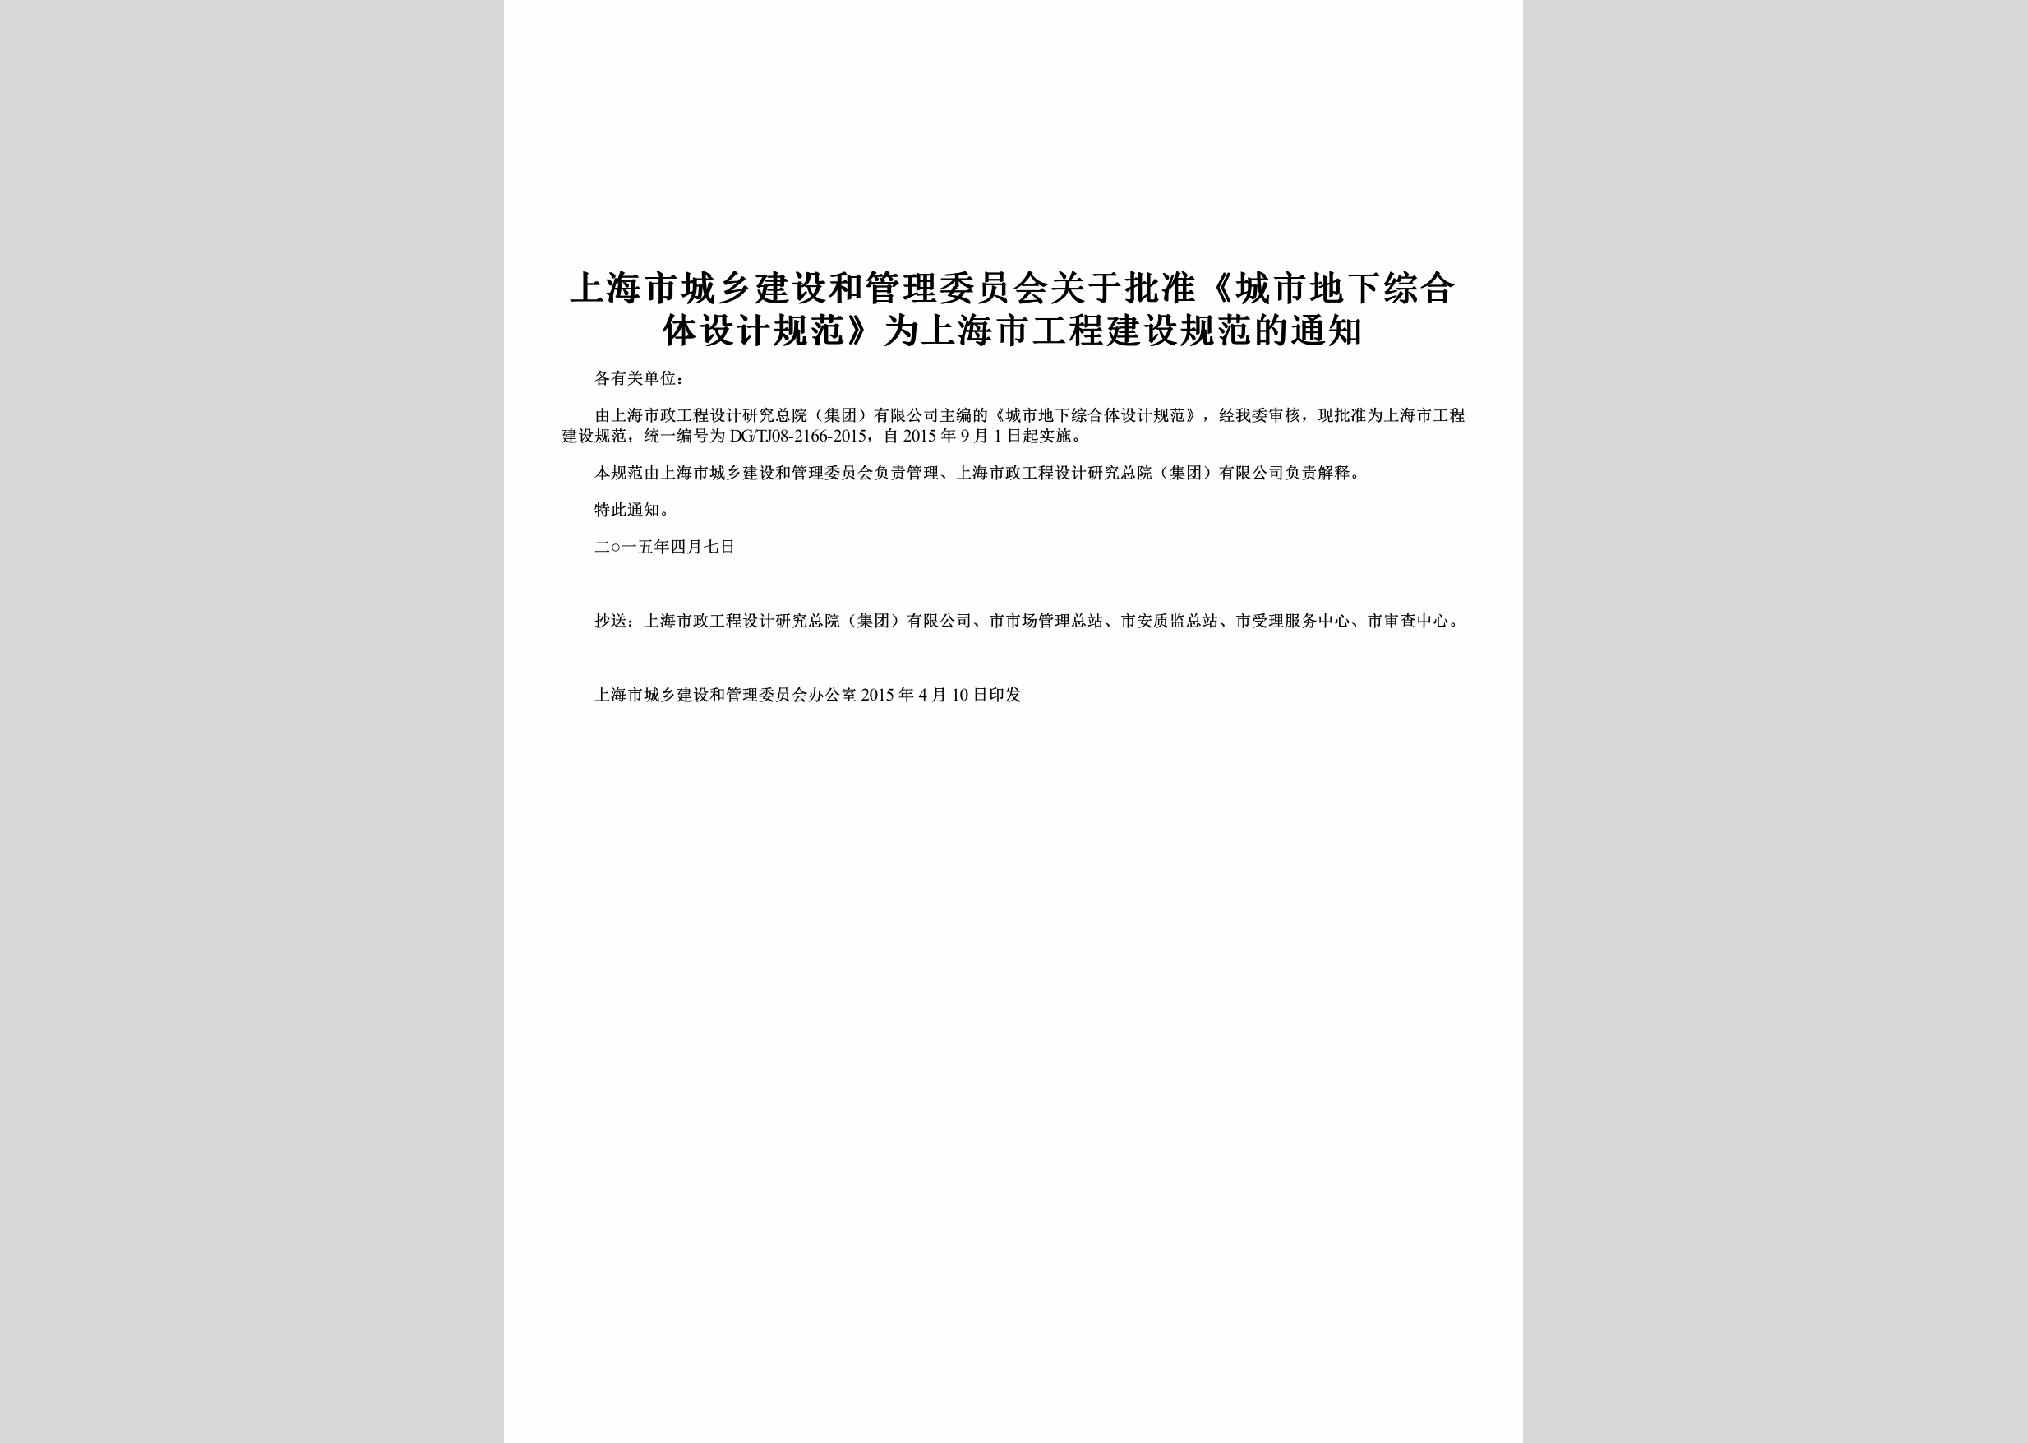 SH-CSZHSJGF-2015：关于批准《城市地下综合体设计规范》为上海市工程建设规范的通知